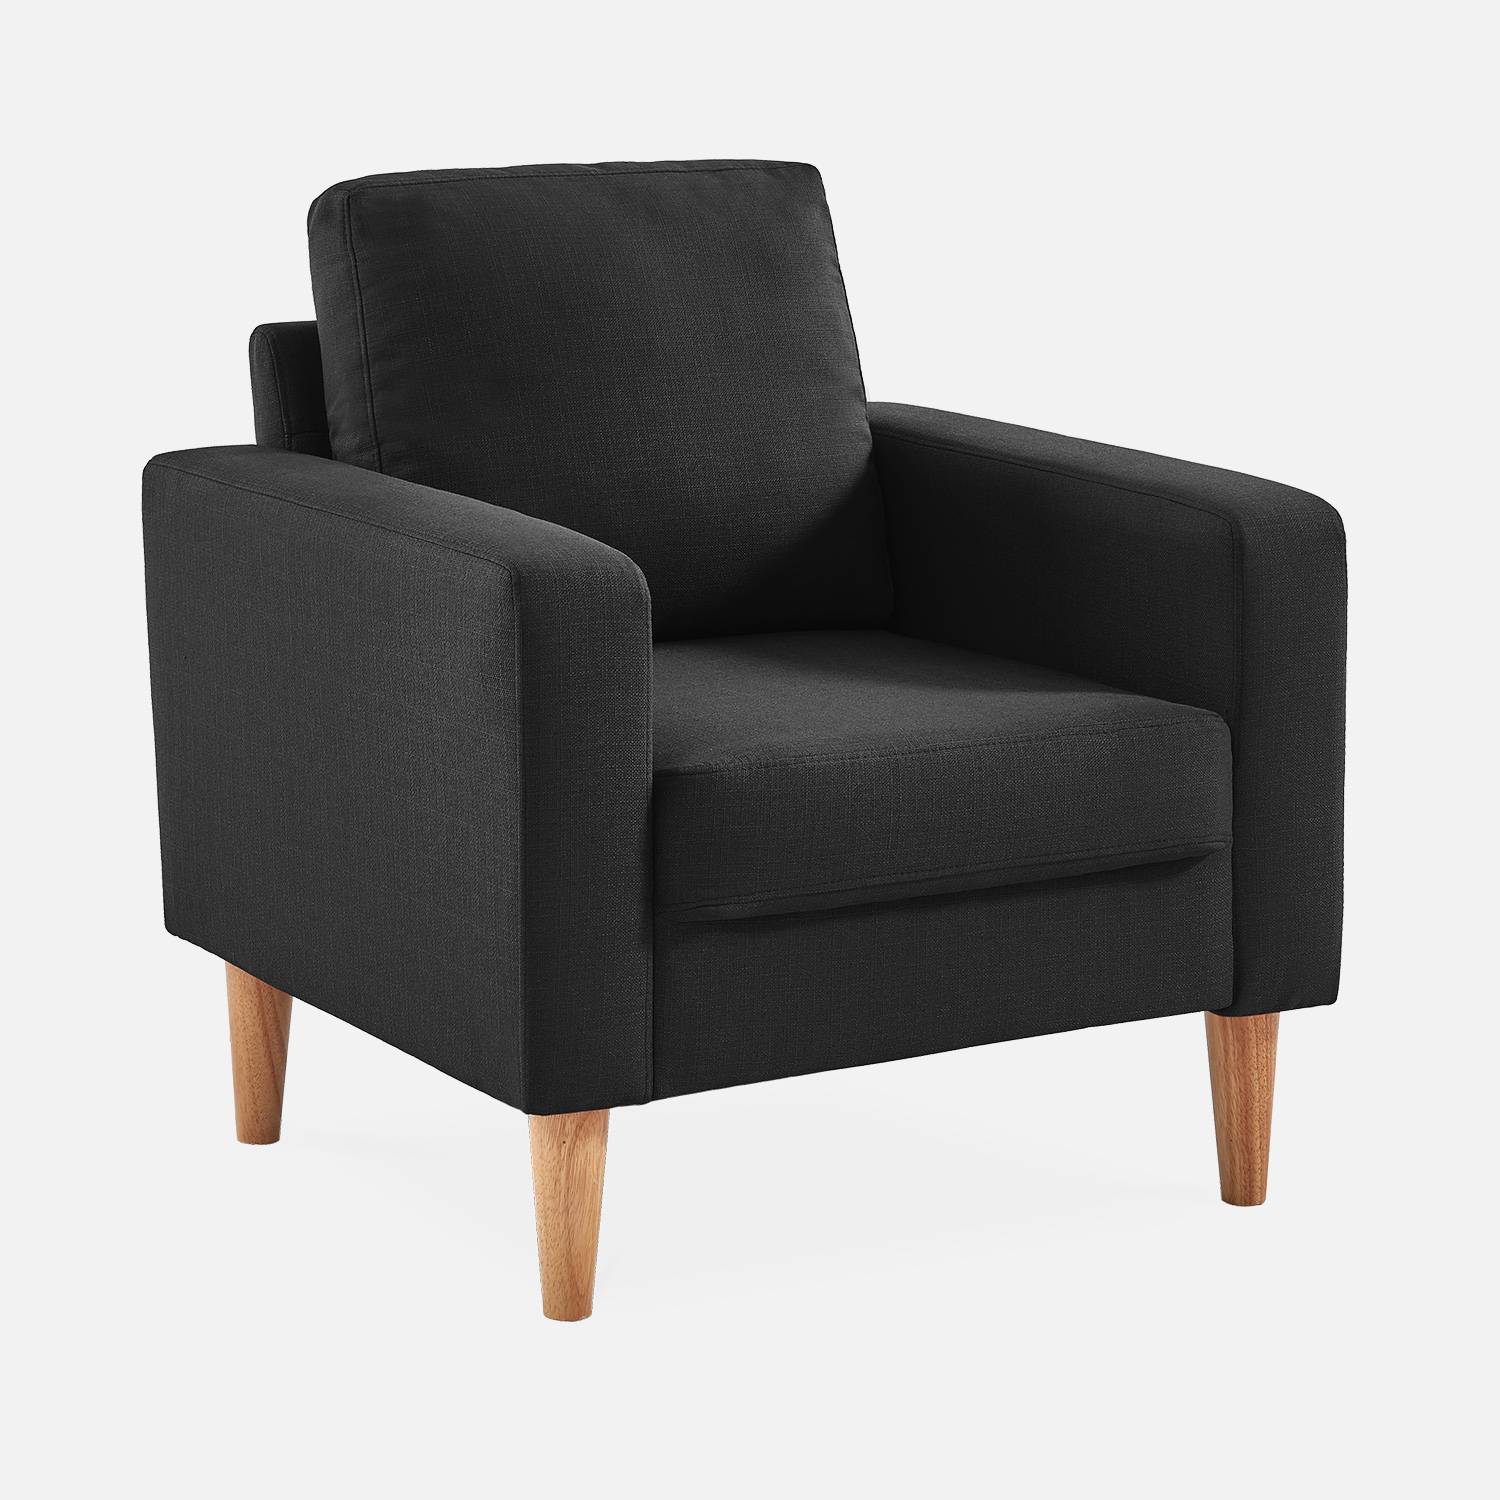 Sillón de tela gris oscuro - Bjorn - Sillón 1 plaza fijo recto patas madera, sillón escandinavo   | sweeek